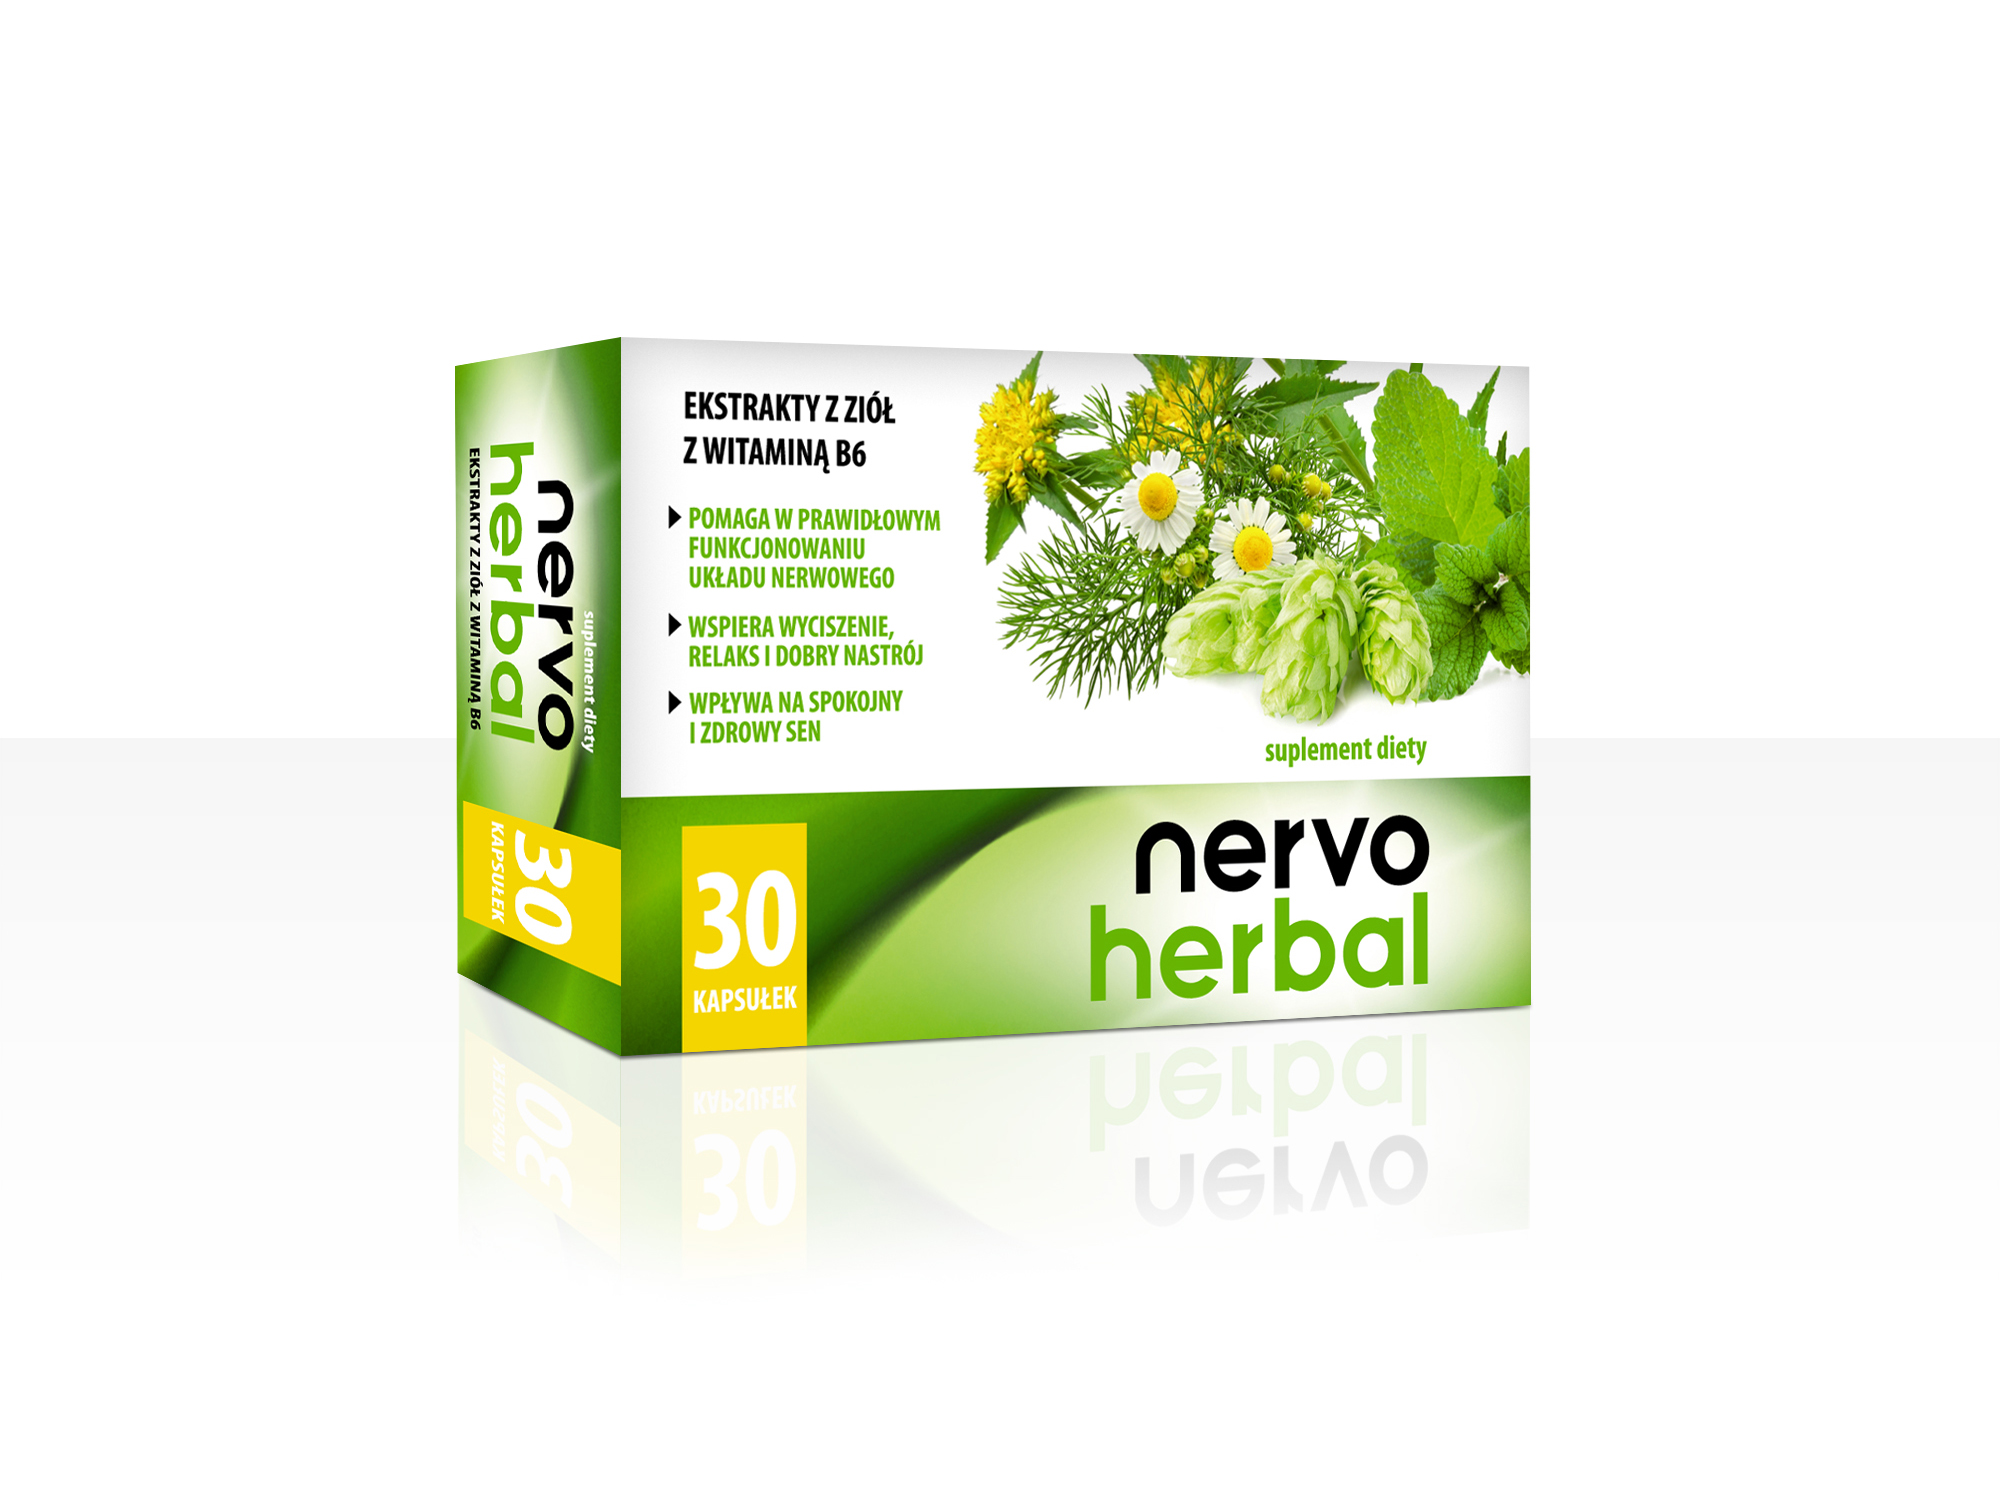 NervoHerbal - ekstrakty z ziela melisy, chmielu, różeńca górskiego, rumianku w połączeniu z witaminą B6.